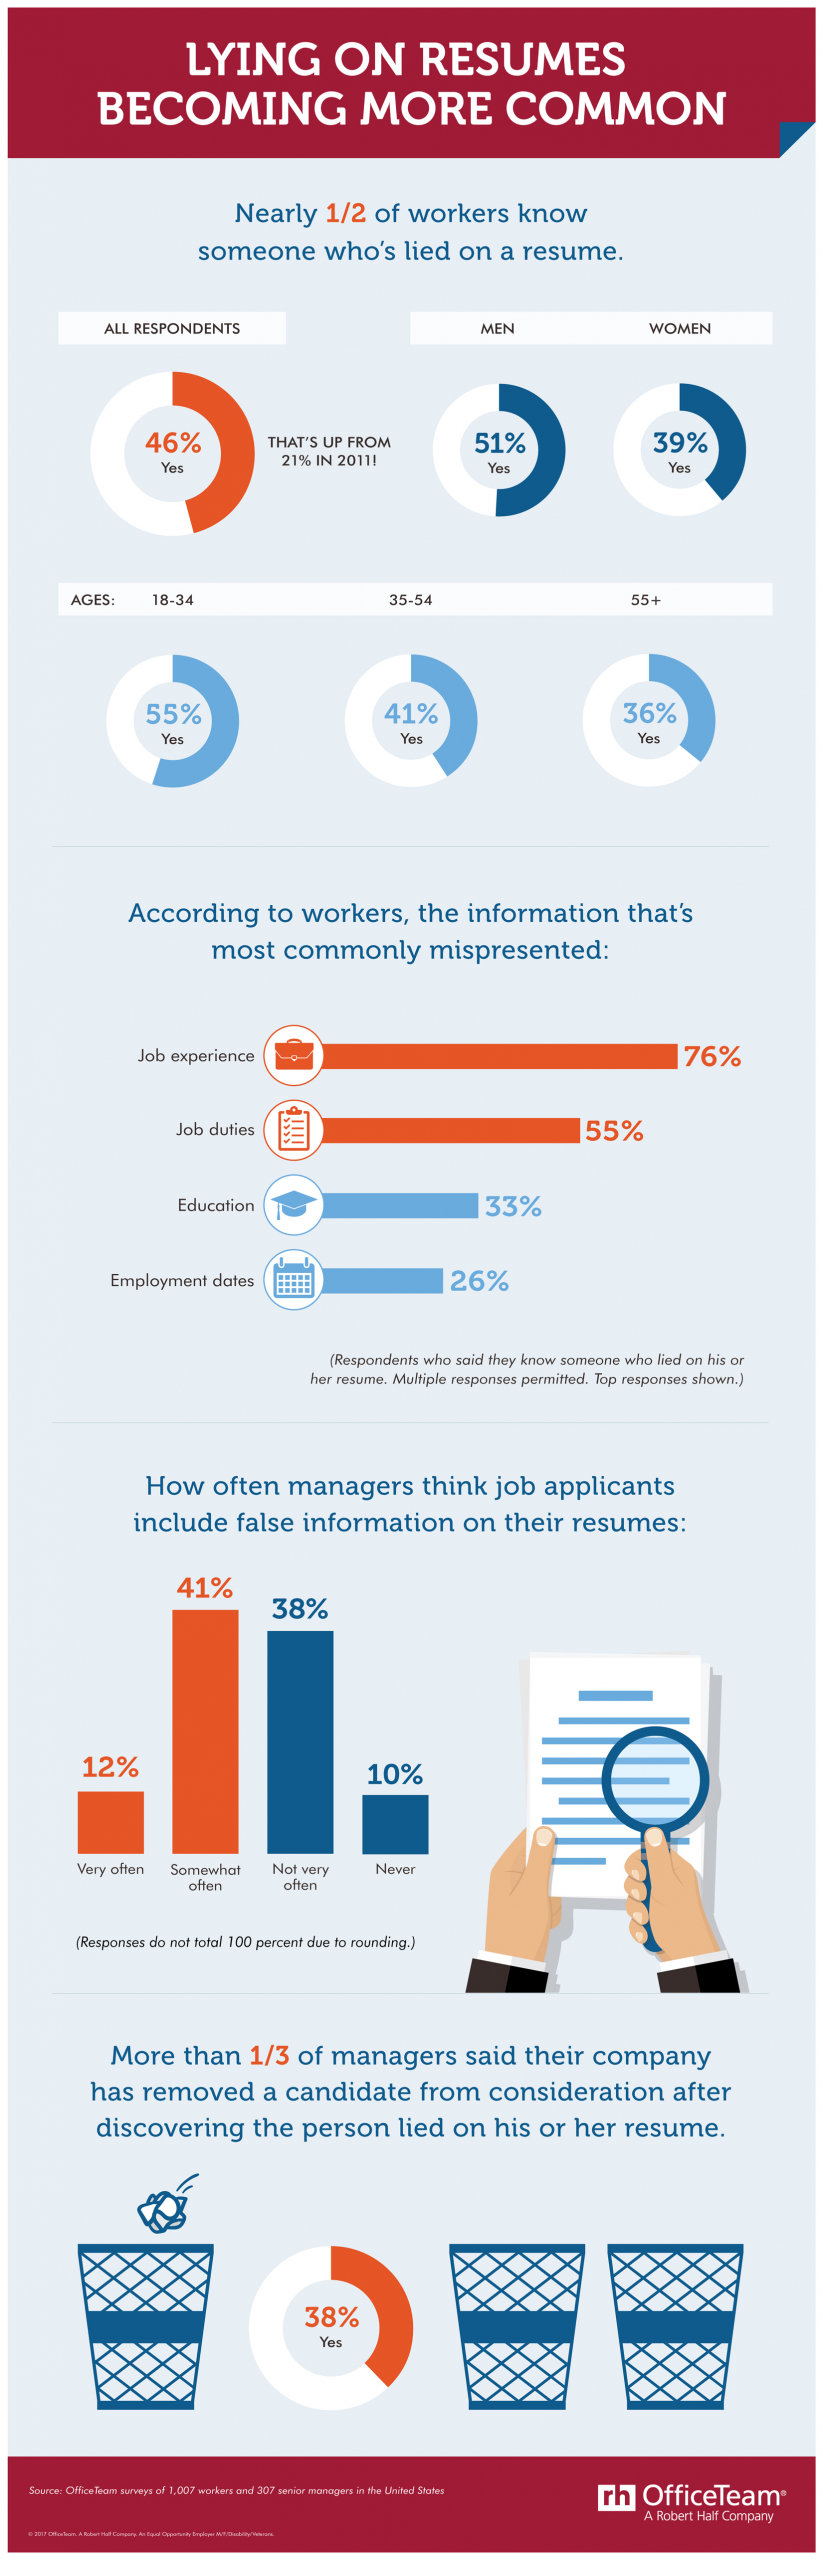 OfficeTeam Lying on Resume Infographic 1  5995e68fde690